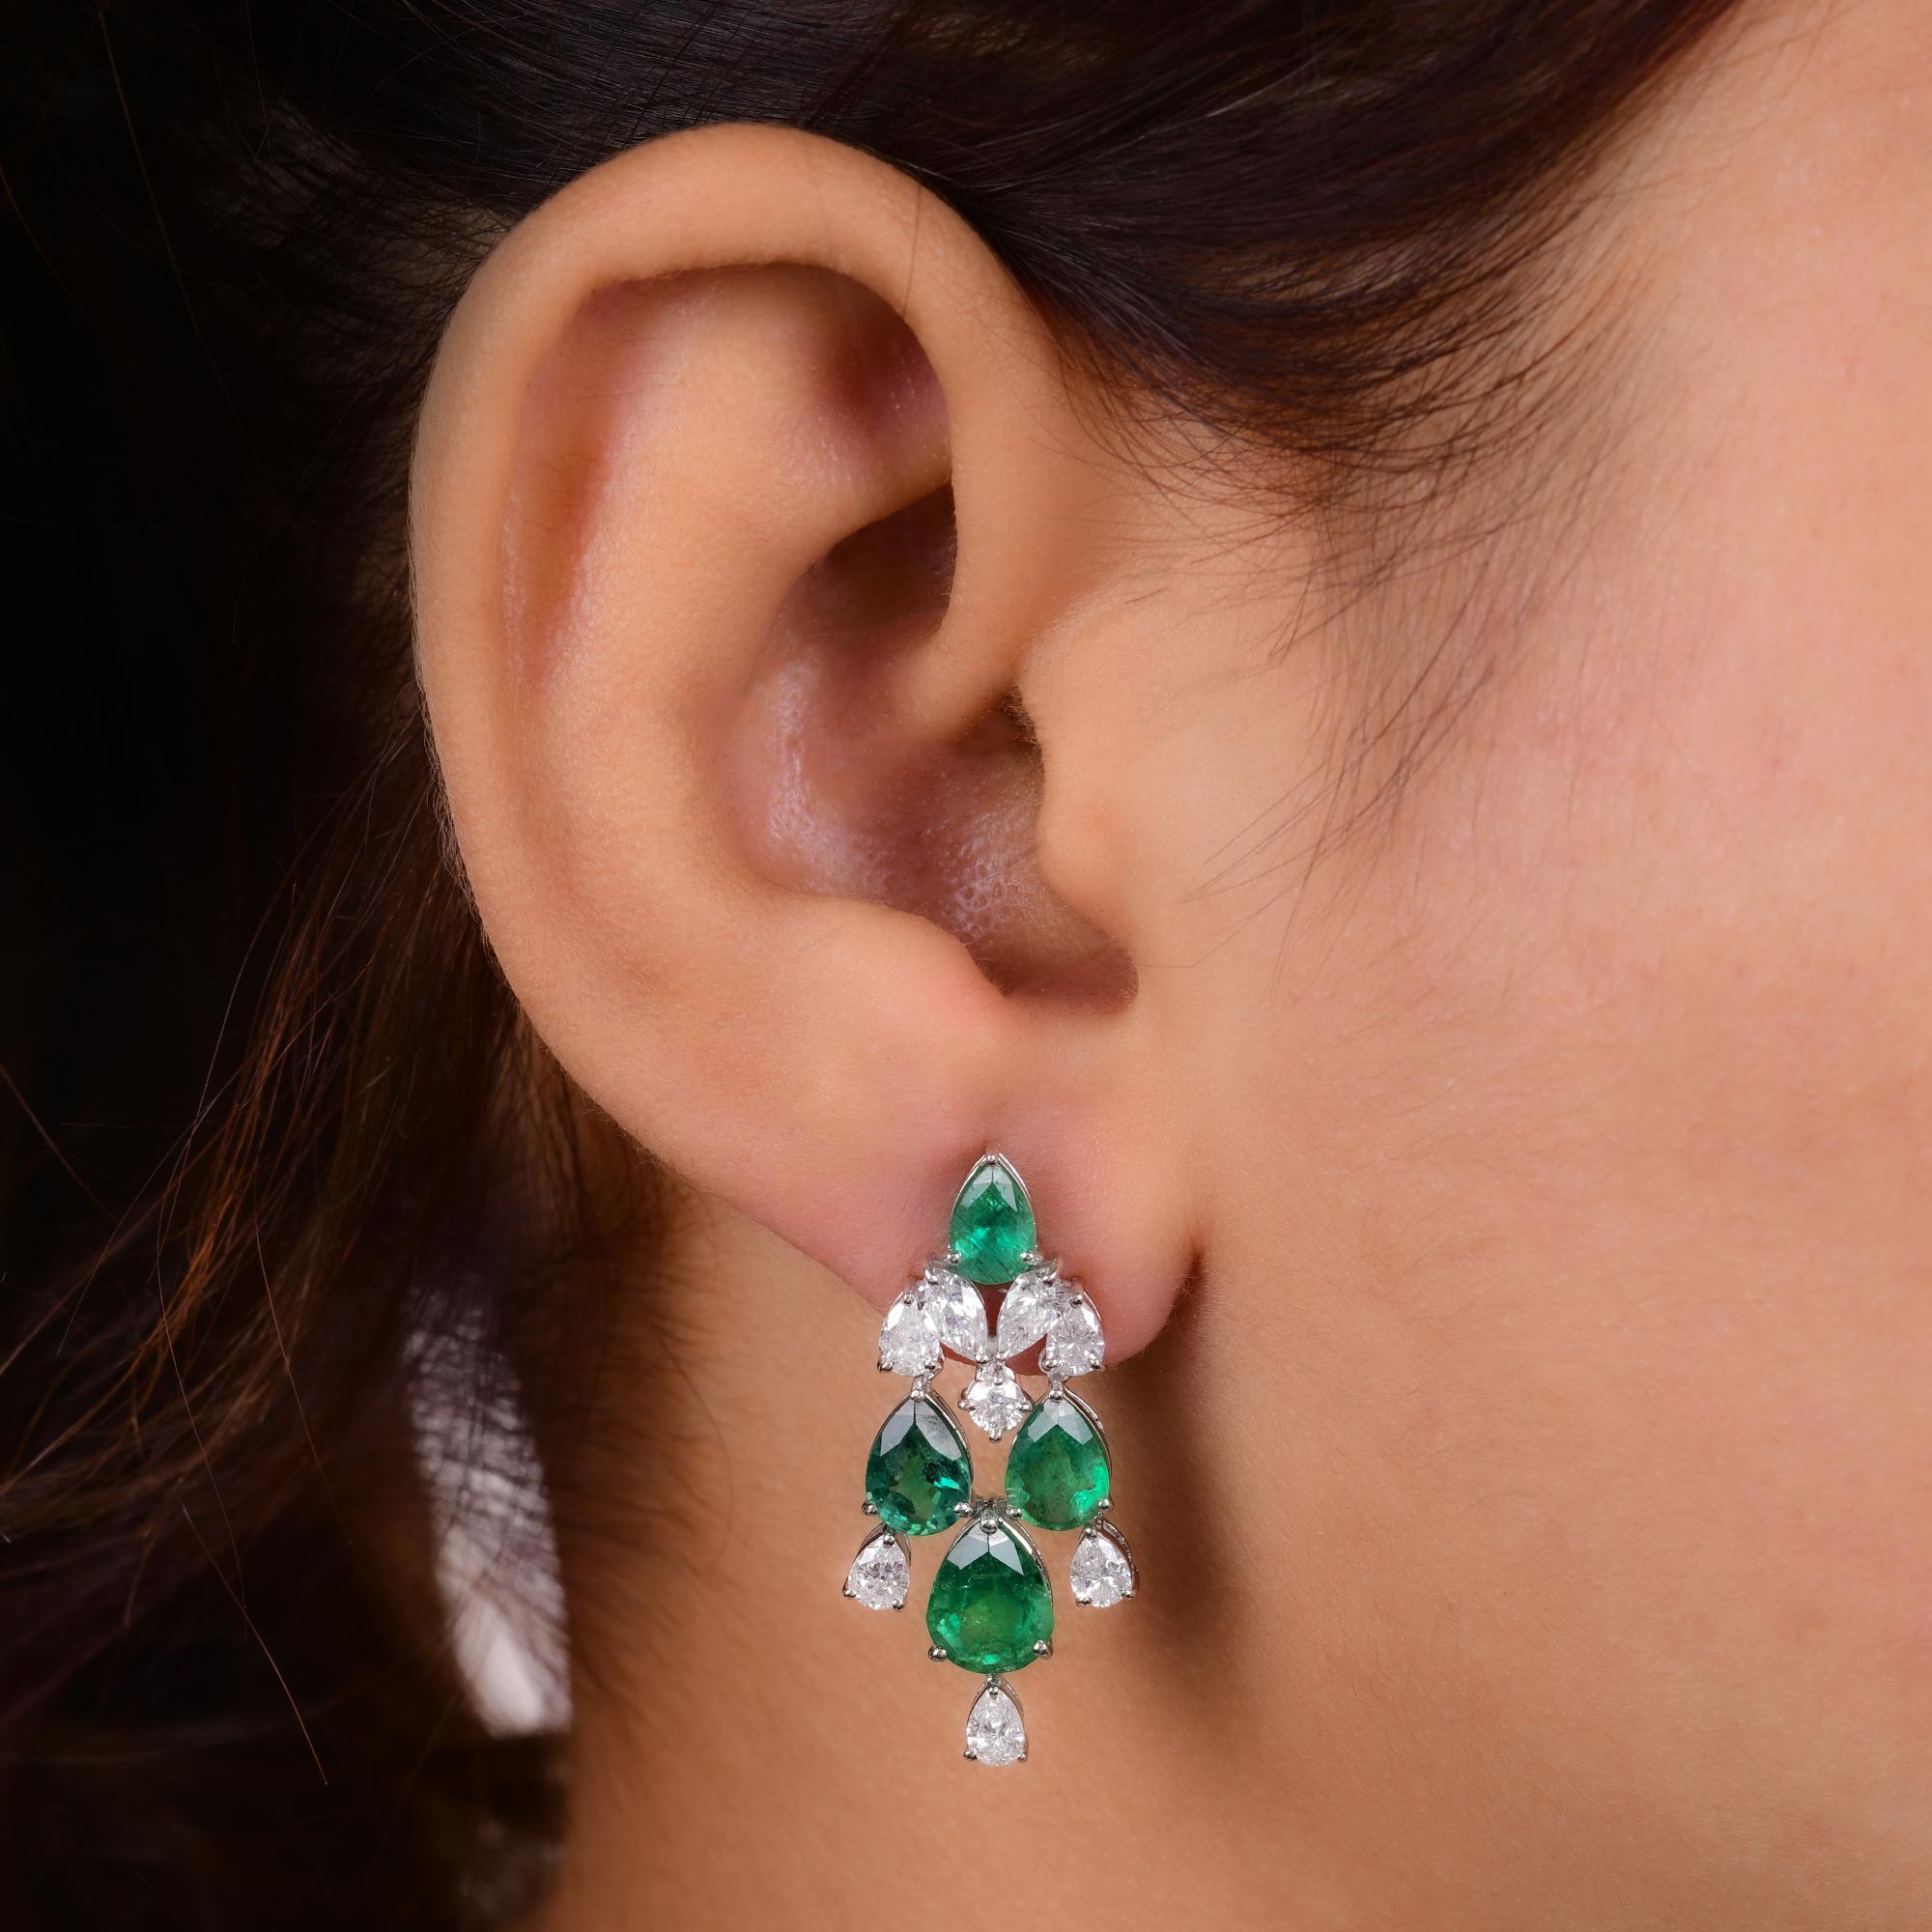 Pear Cut Real Zambian Emerald Gemstone Earrings Diamond 18 Karat White Gold Fine Jewelry For Sale